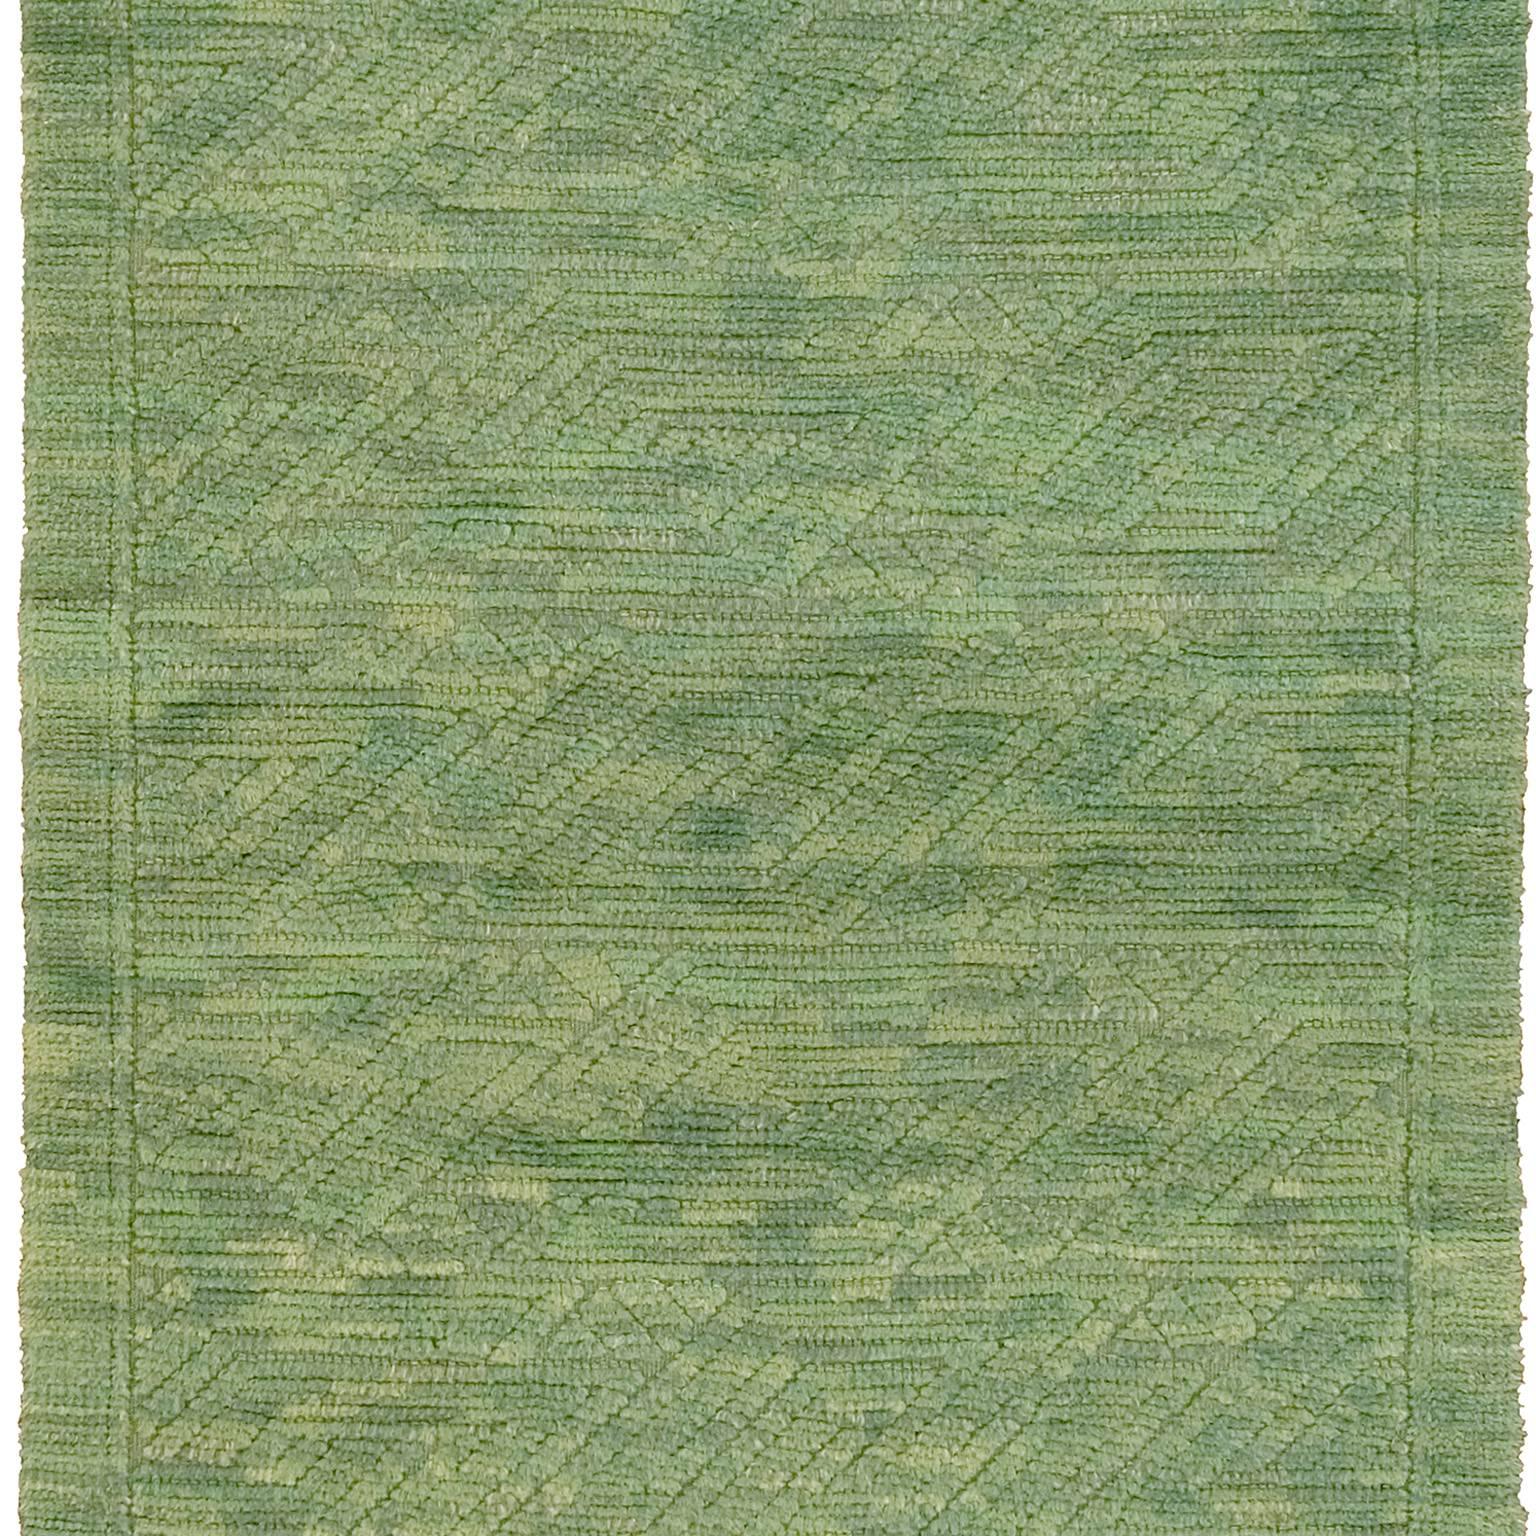 Swedish Pile rug, 1956
Sweden, circa 1956
Handwoven
Initialed: SA 1956 (Signe Asplund)
Provenance: Marianne von Münschow.